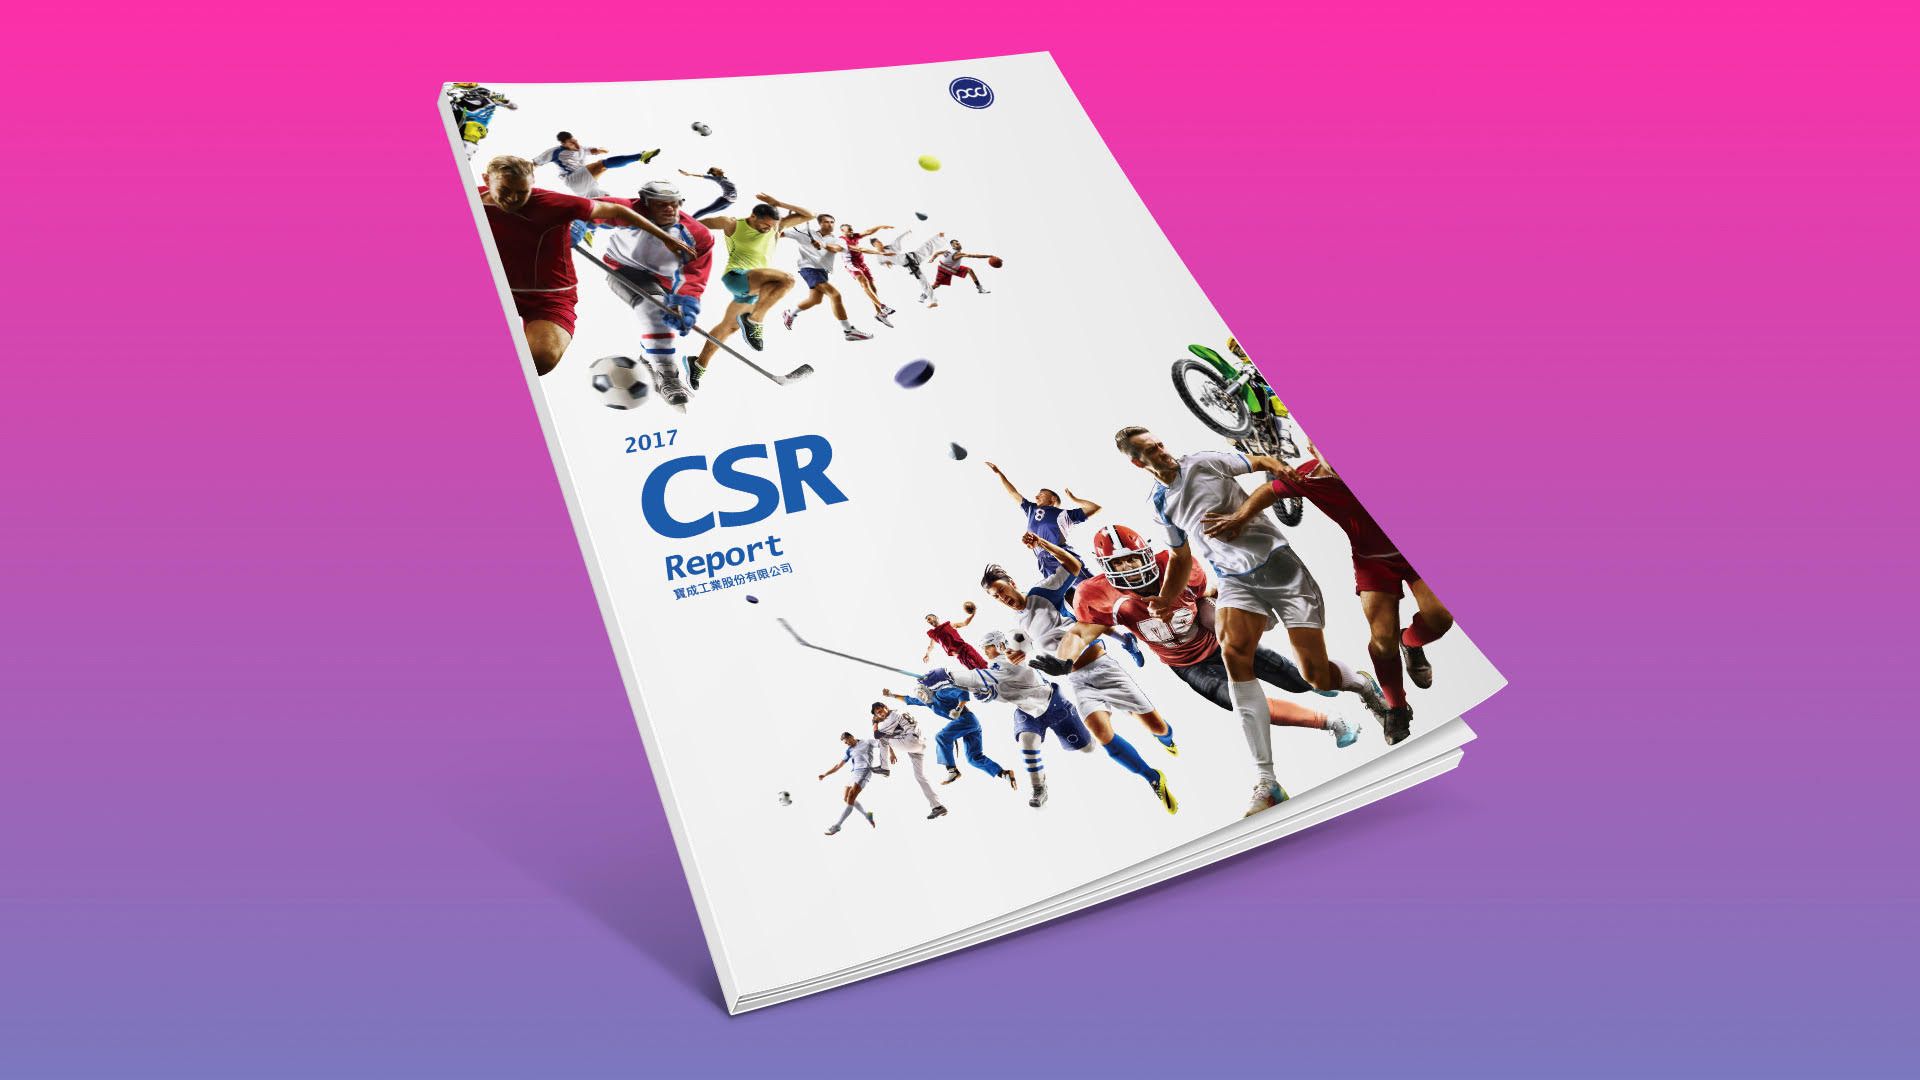 前往 2021年度 CSR 報告書專區瞭解更多